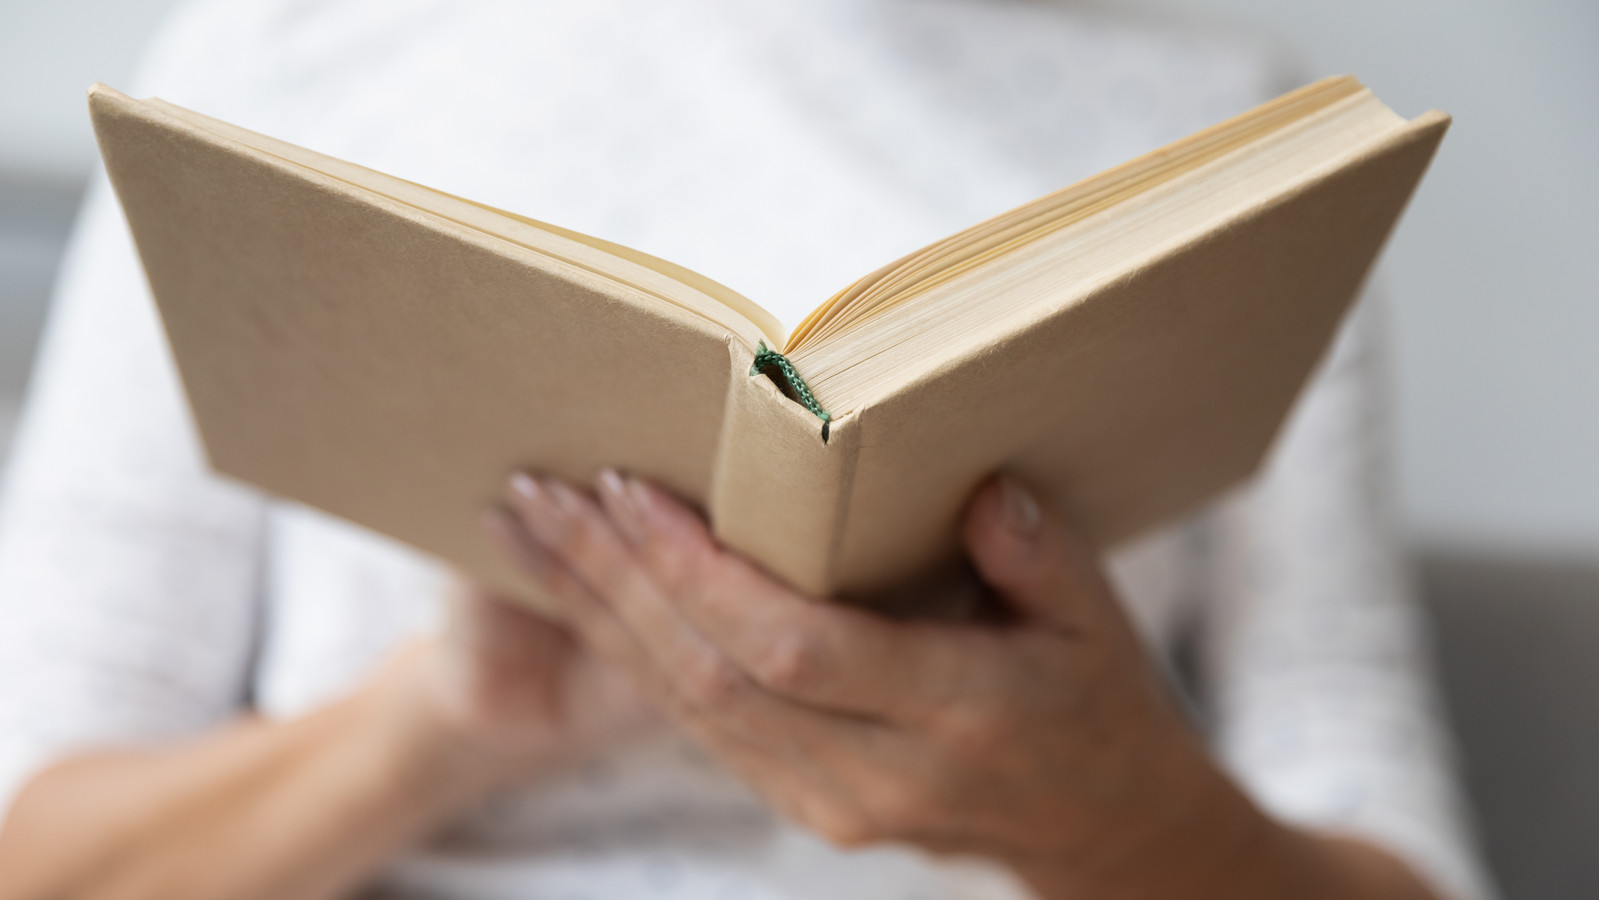 Купить книгу с рук. Открытая книга в руках. Книжка в руках. Книга в руках. Человек с книгой в руках.